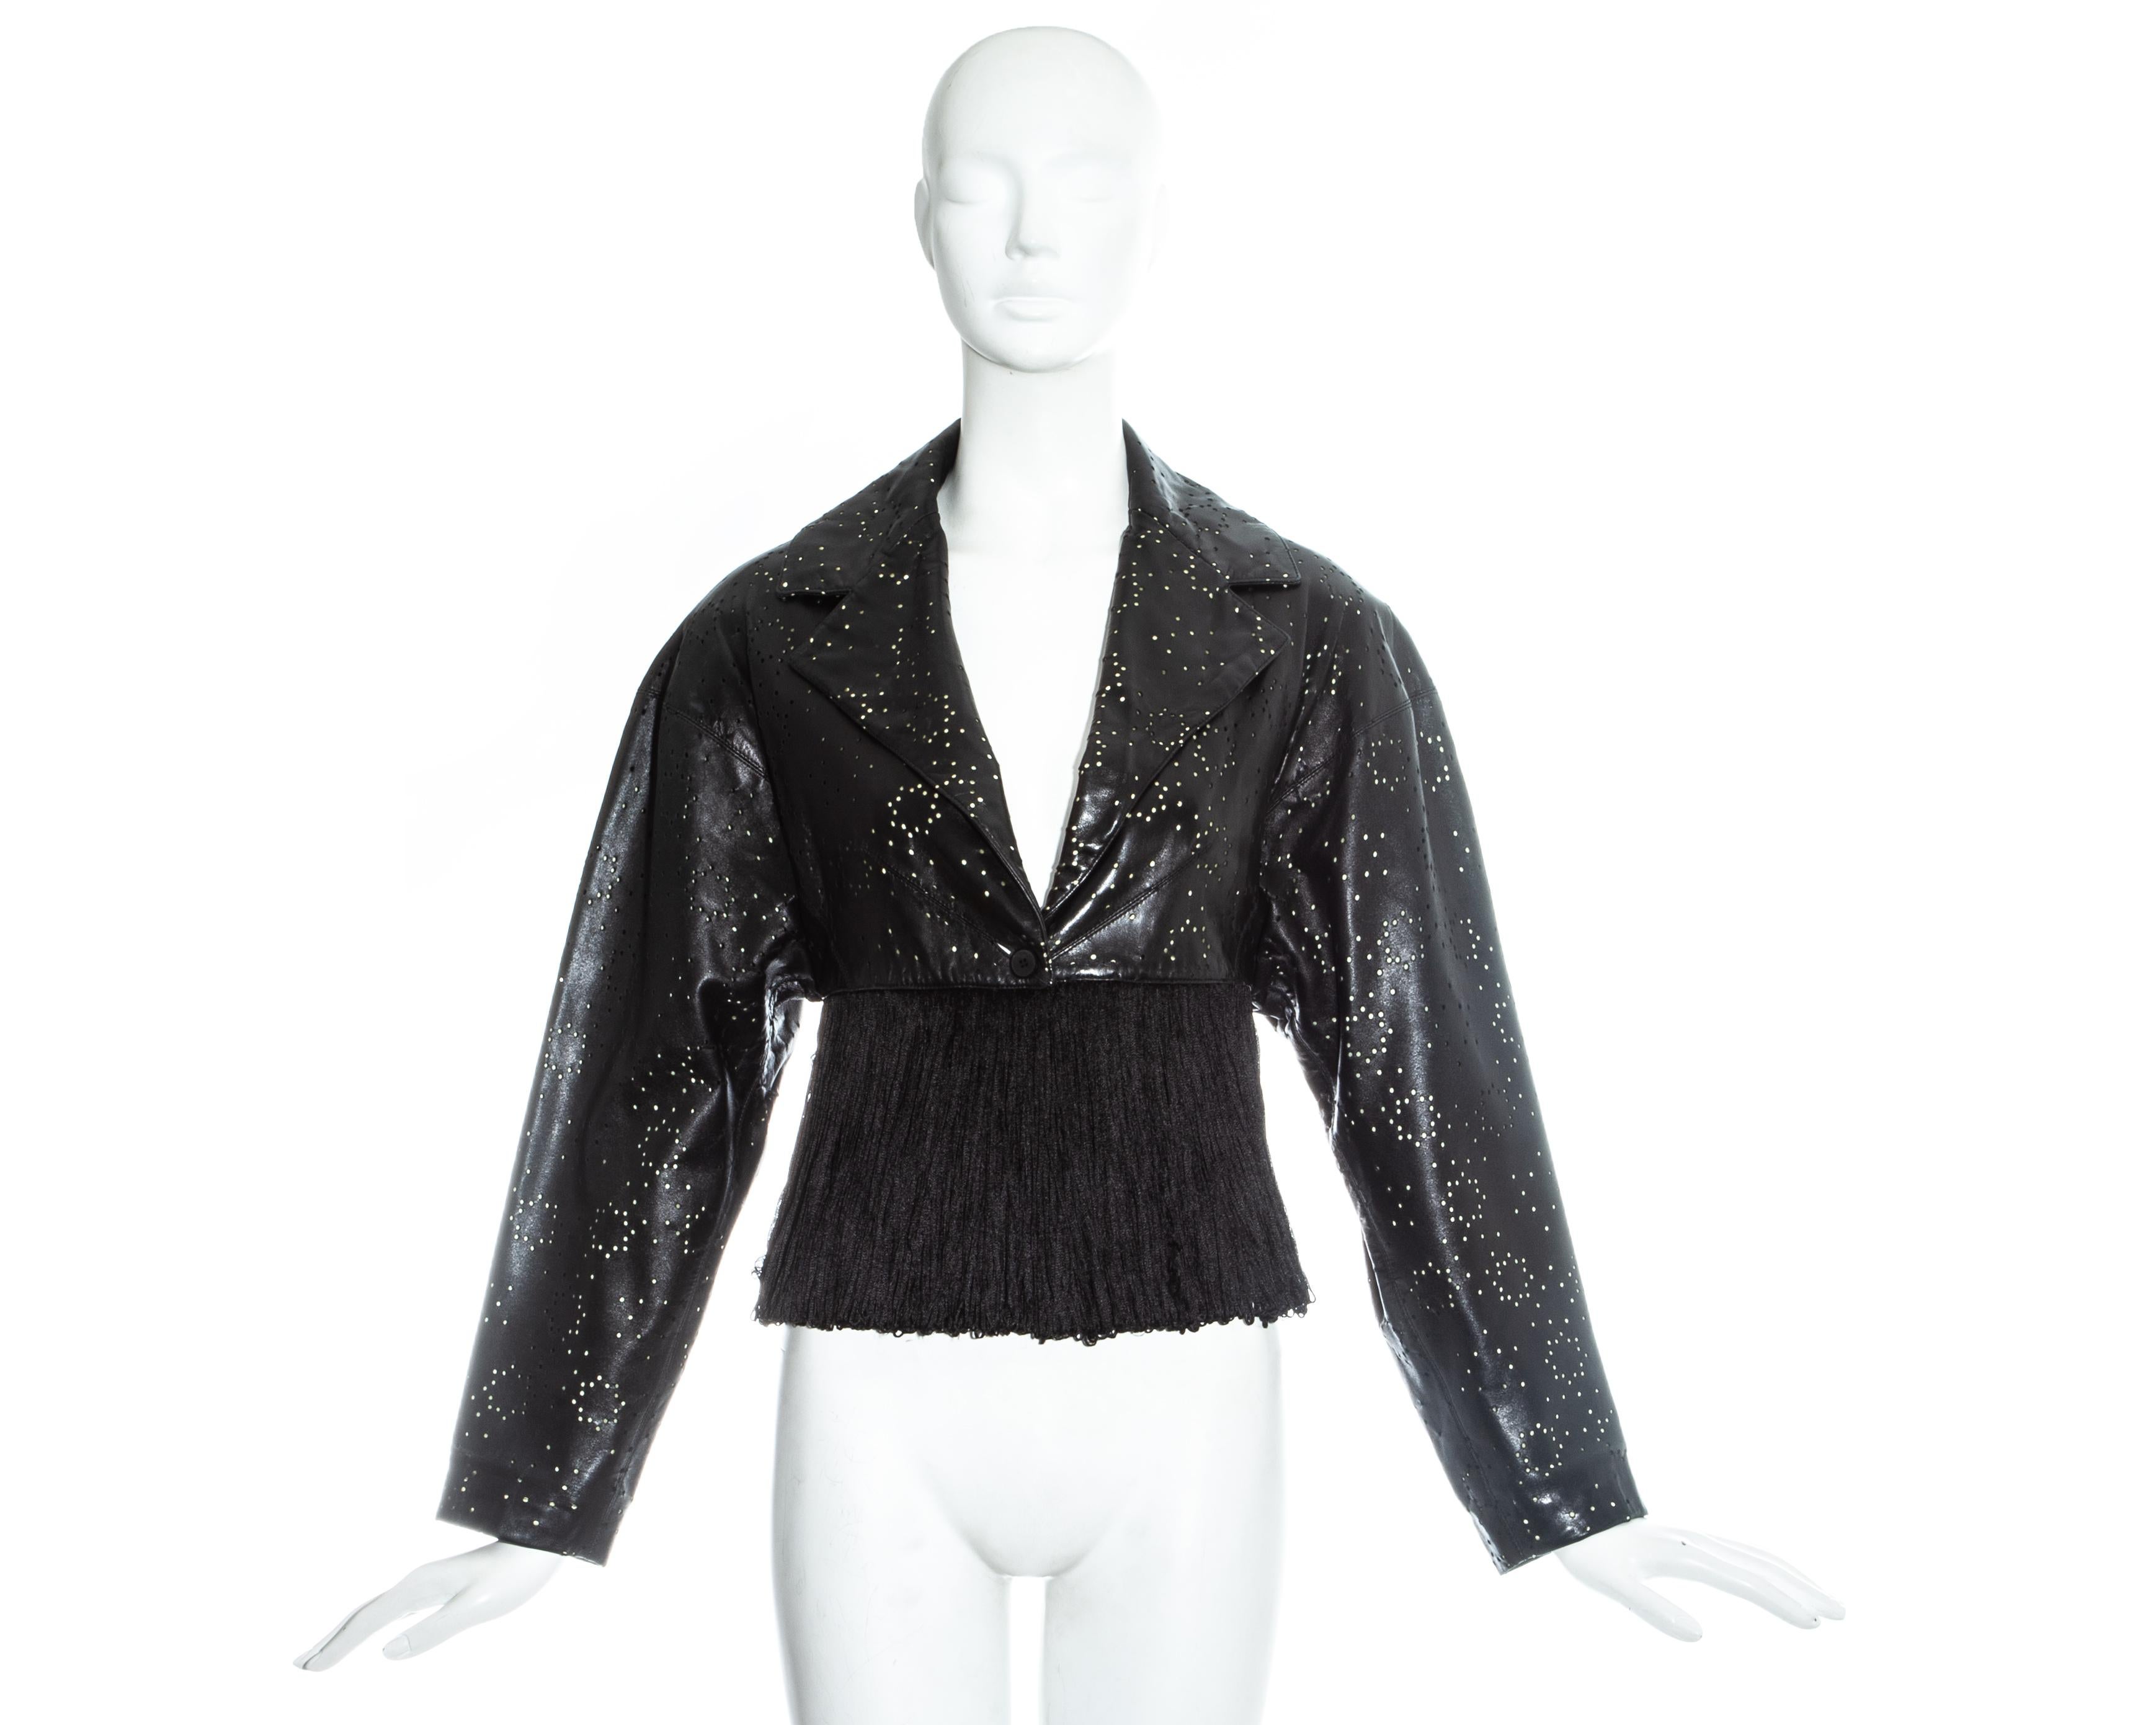 Azzedine Alaia ; veste en cuir noir découpé au laser, frangée de ruban de soie. 

Printemps-été 1988
